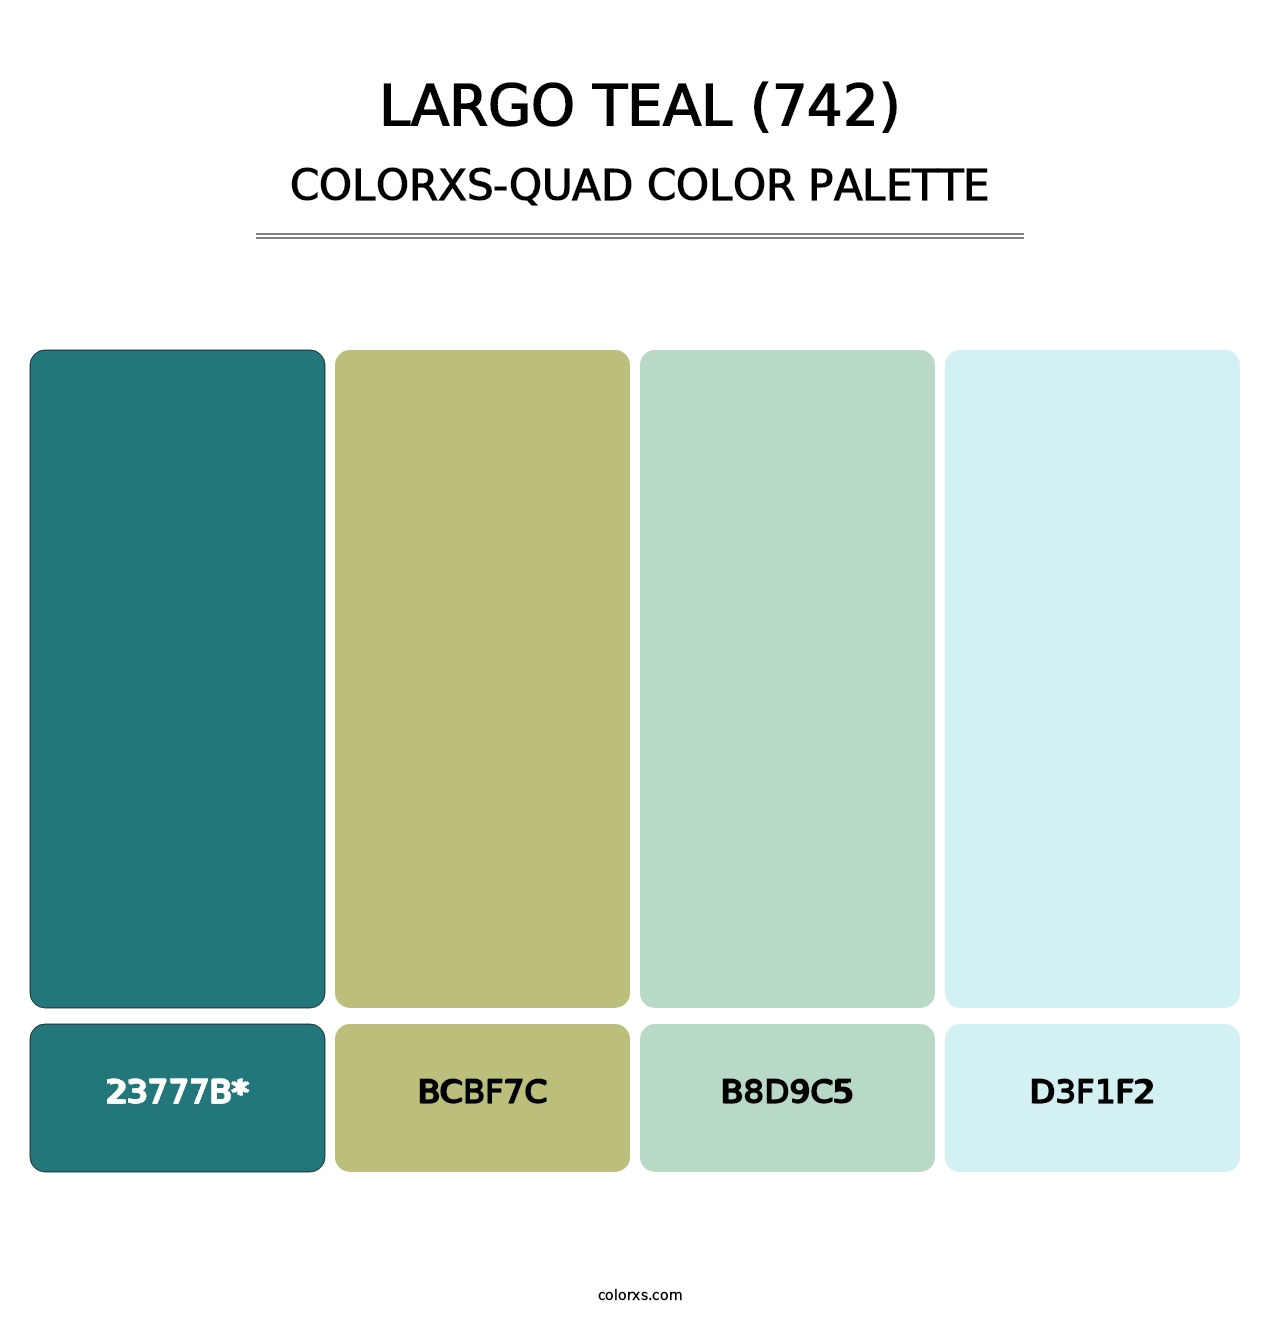 Largo Teal (742) - Colorxs Quad Palette